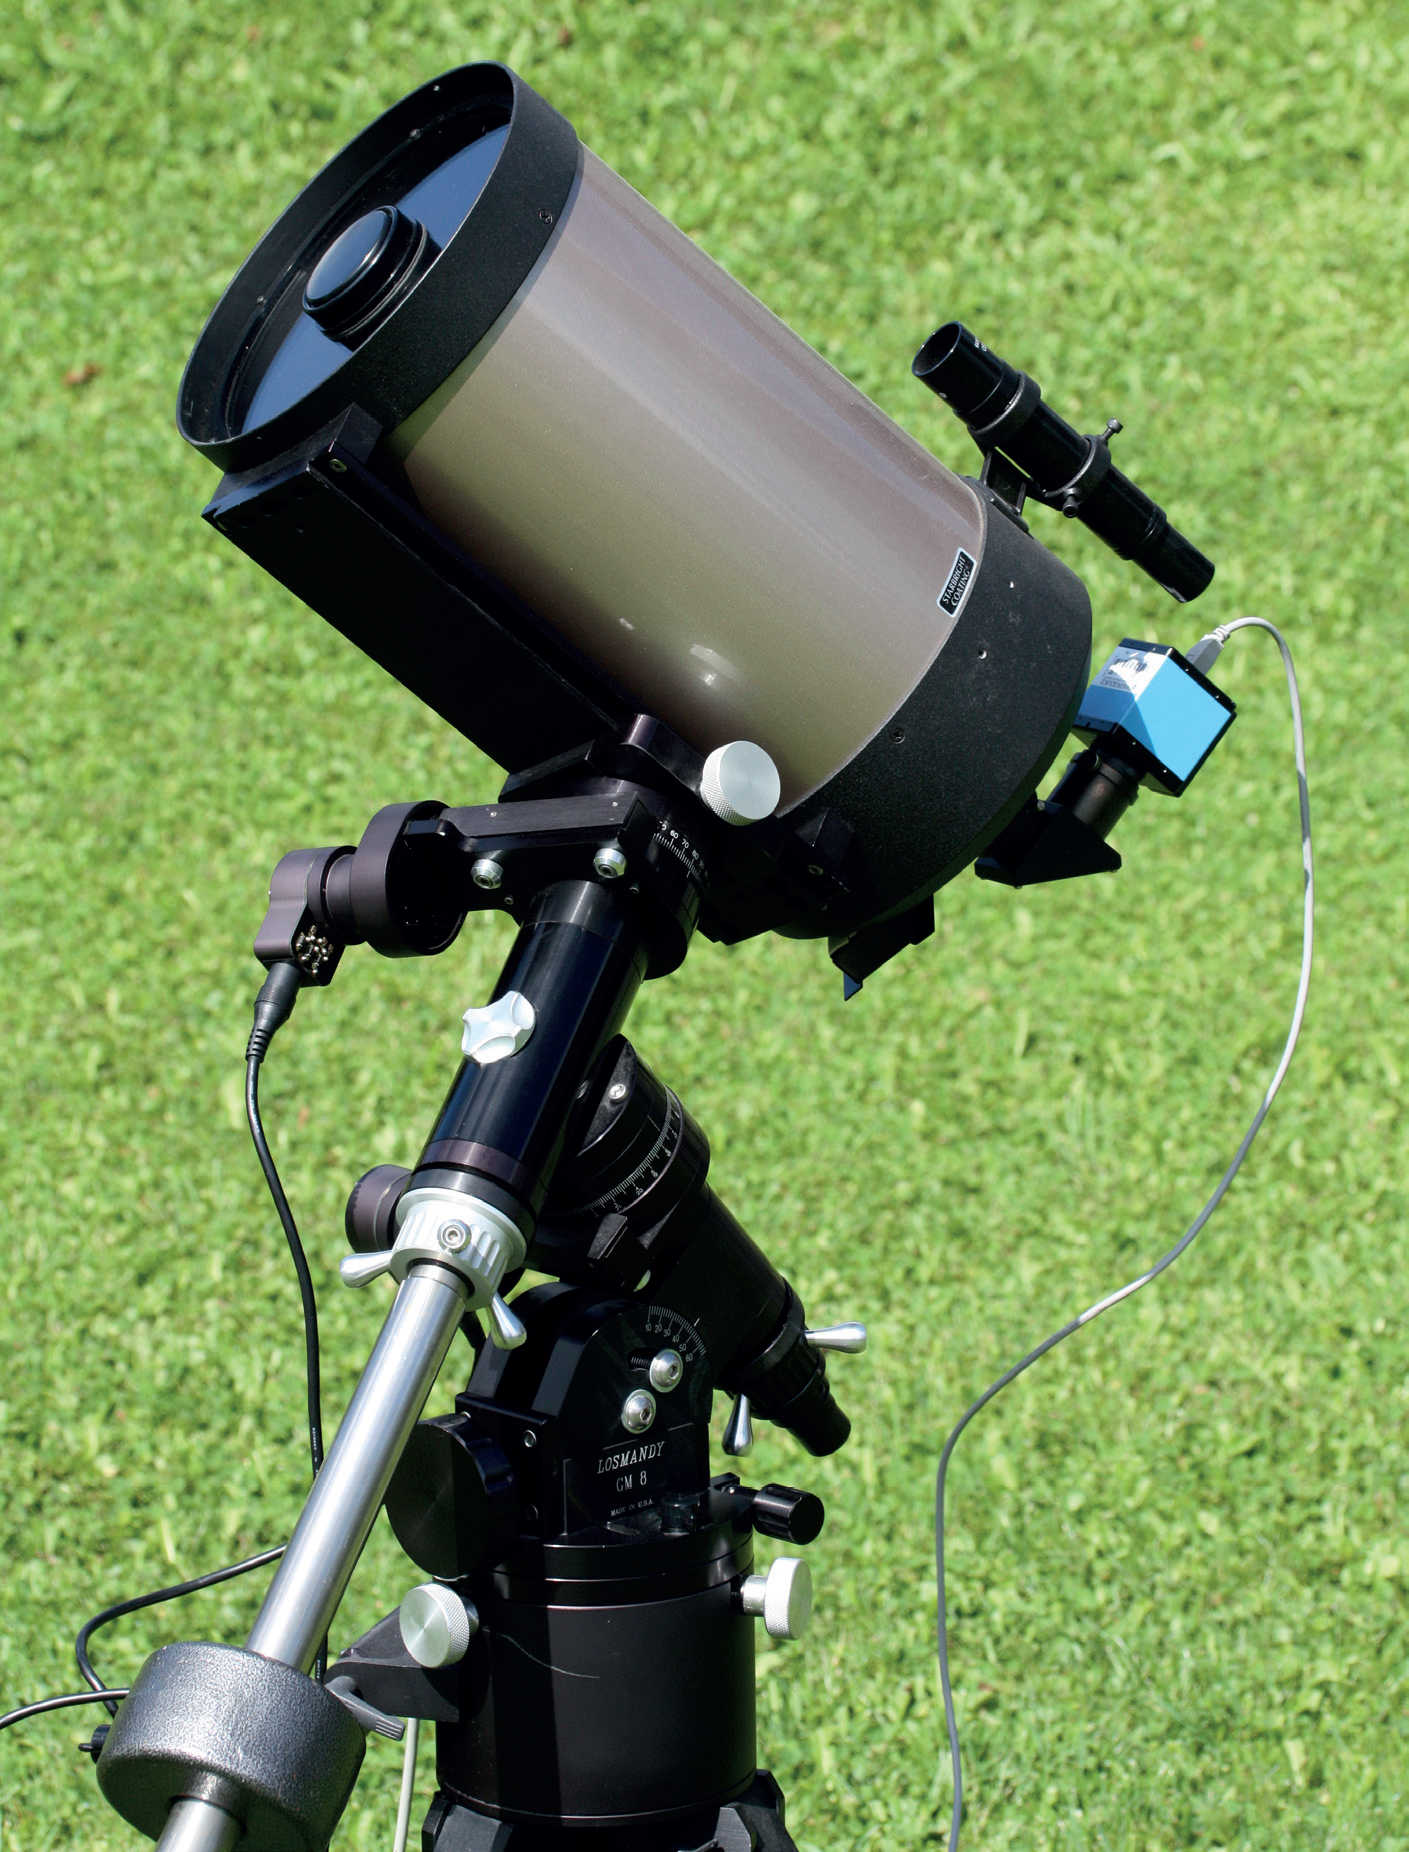 Os telescópios compactos e de longa distância focal, tal como o telescópio Schmidt-Cassegrain aqui representado, são a ferramenta ideal para a fotografia de planetas. A montagem alemã motorizada permite um seguimento preciso da unidade ótica, bem como sequências de exposição mais longas com a câmara CCD conectada. U. Dittler